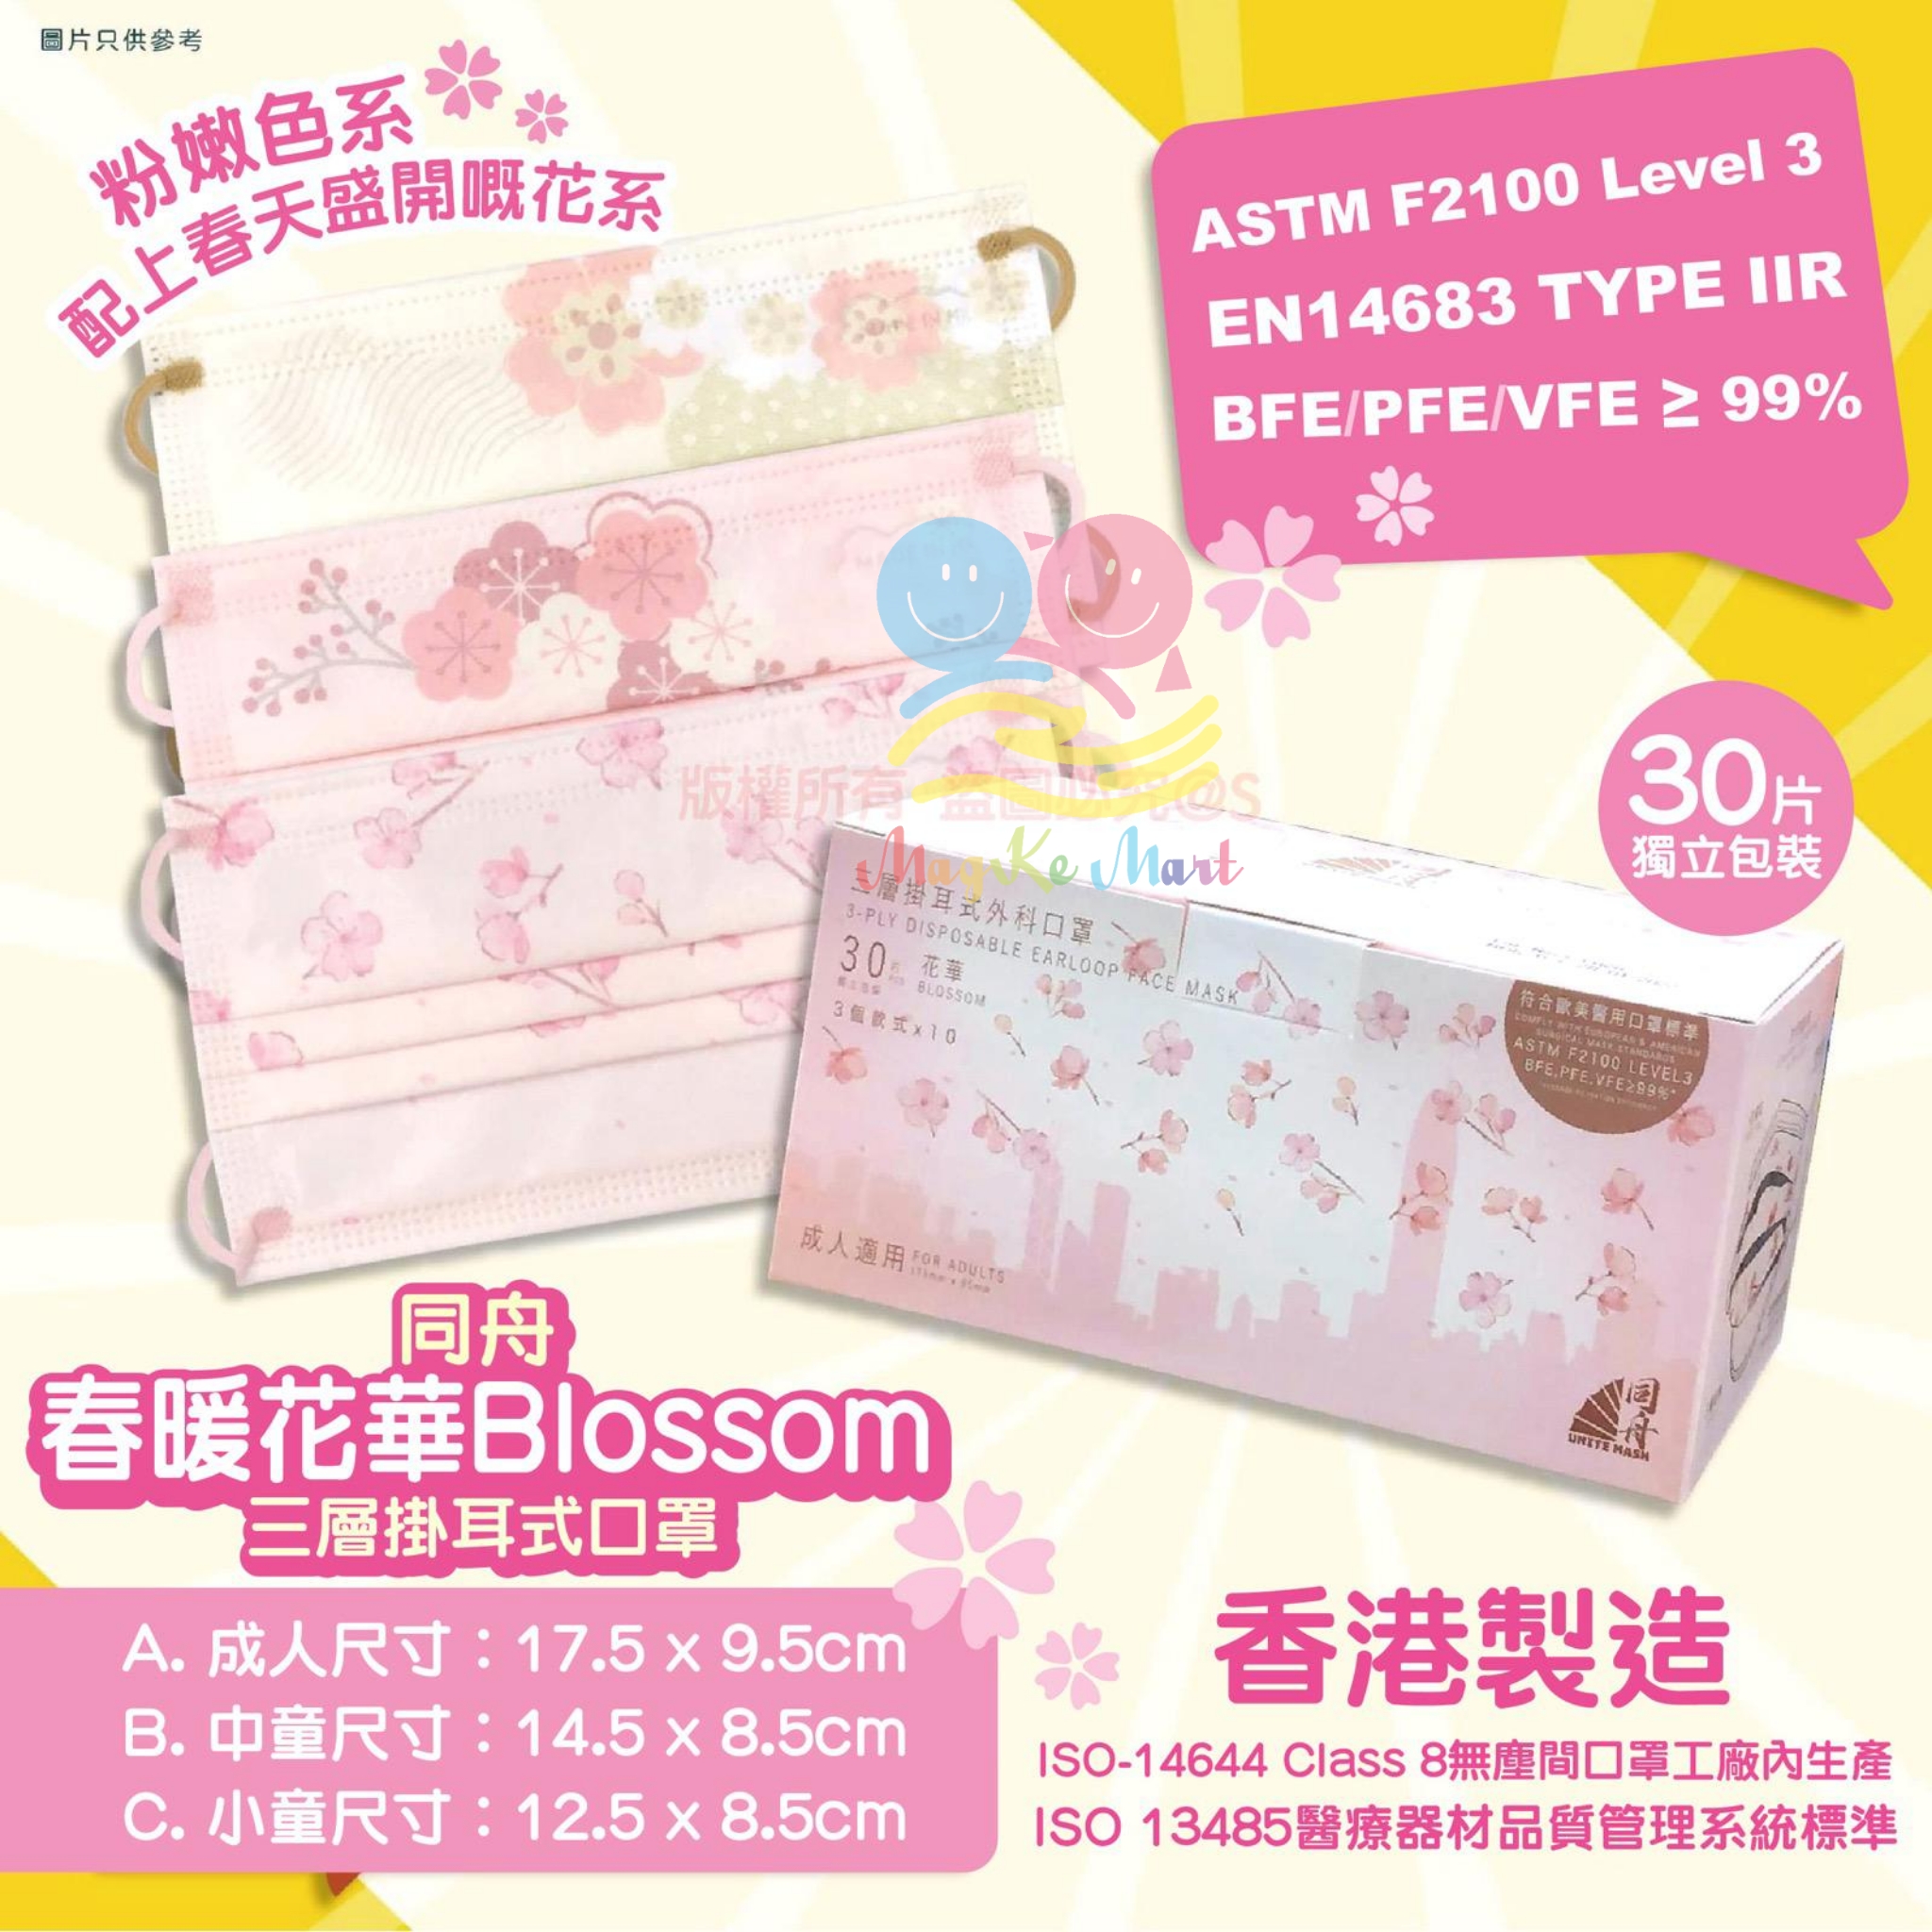 香港同舟 Unite Mask Blossom 花華三層掛耳式成人口罩(1盒30個)(獨立包裝)